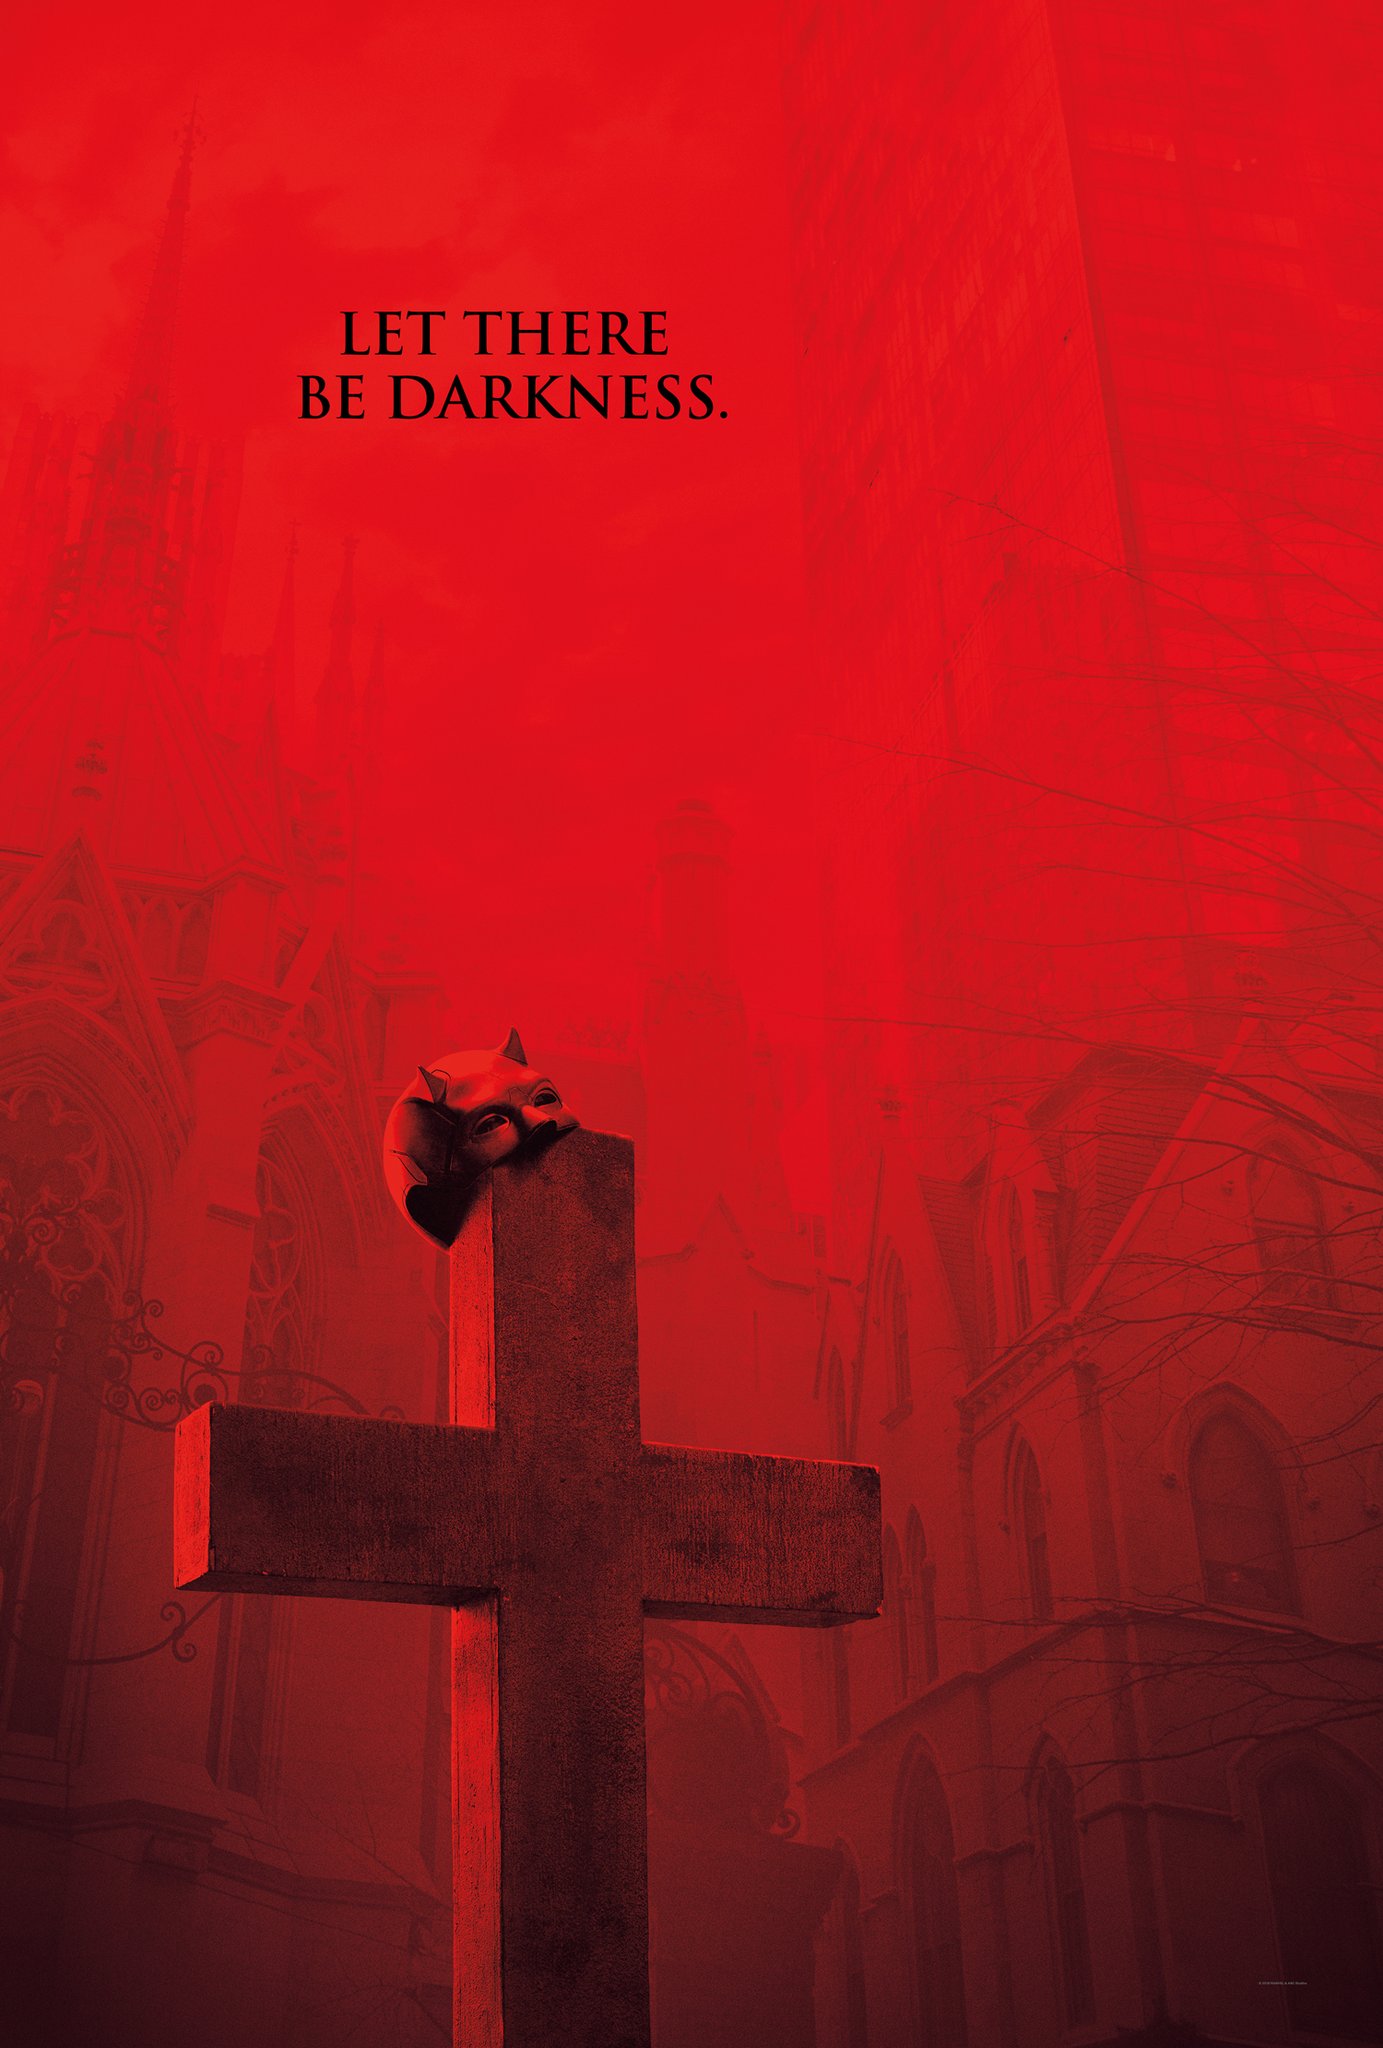 Daredevil, saison 3 : Let There be Darkness. (Que les tÃ©nÃ¨bres soient.)